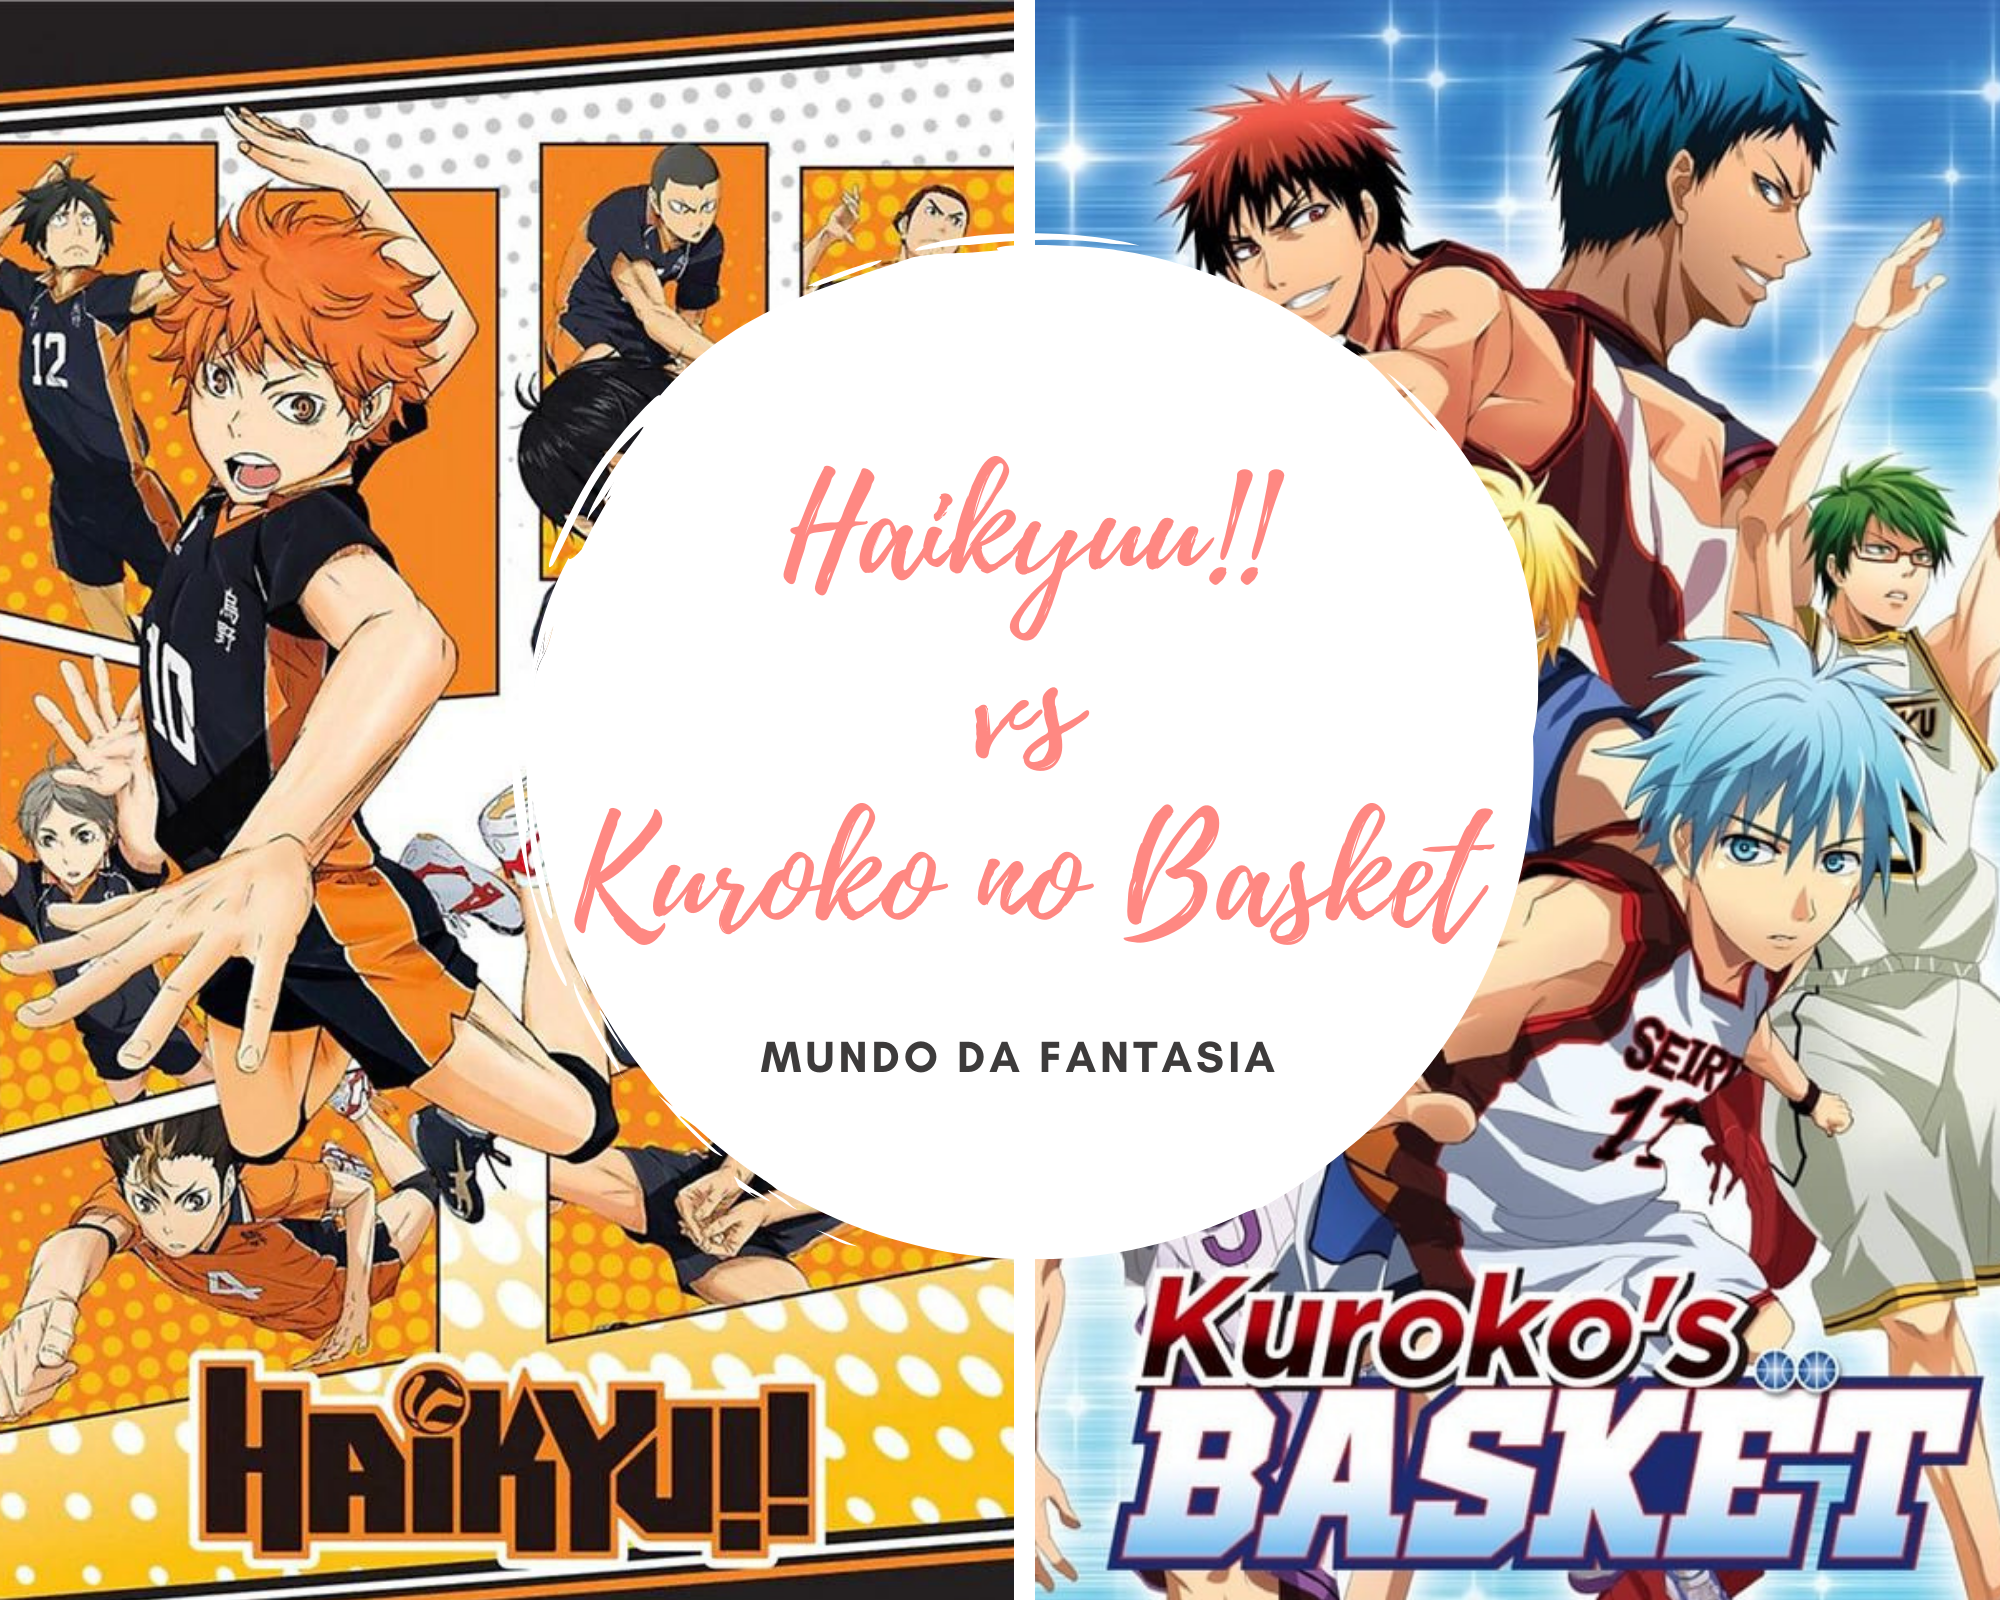 Haikyuu BR - Personagens com o mesmo dublador - versão Kuroko no Basket. E  aí, vocês conseguiram diferenciar os personagens pela voz? P.s.: Até hoje  não consigo acreditar que o dublador do